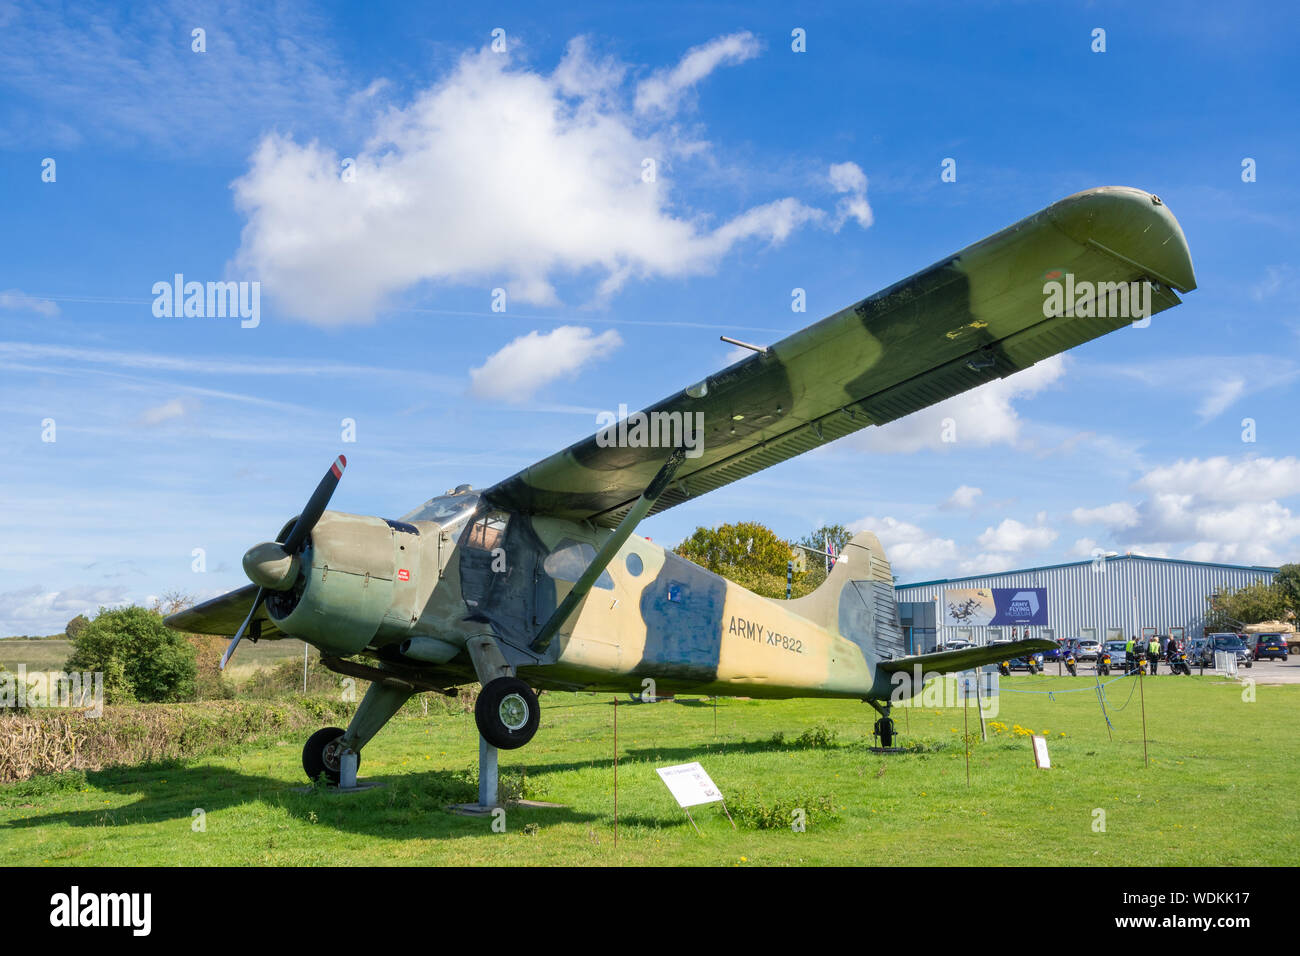 Die Armee fliegen Museum am Middle Wallop Flugplatz, Hampshire, UK, mit einer De Havilland Canada DHC-2 Beaver Flugzeug auf dem Display Stockfoto